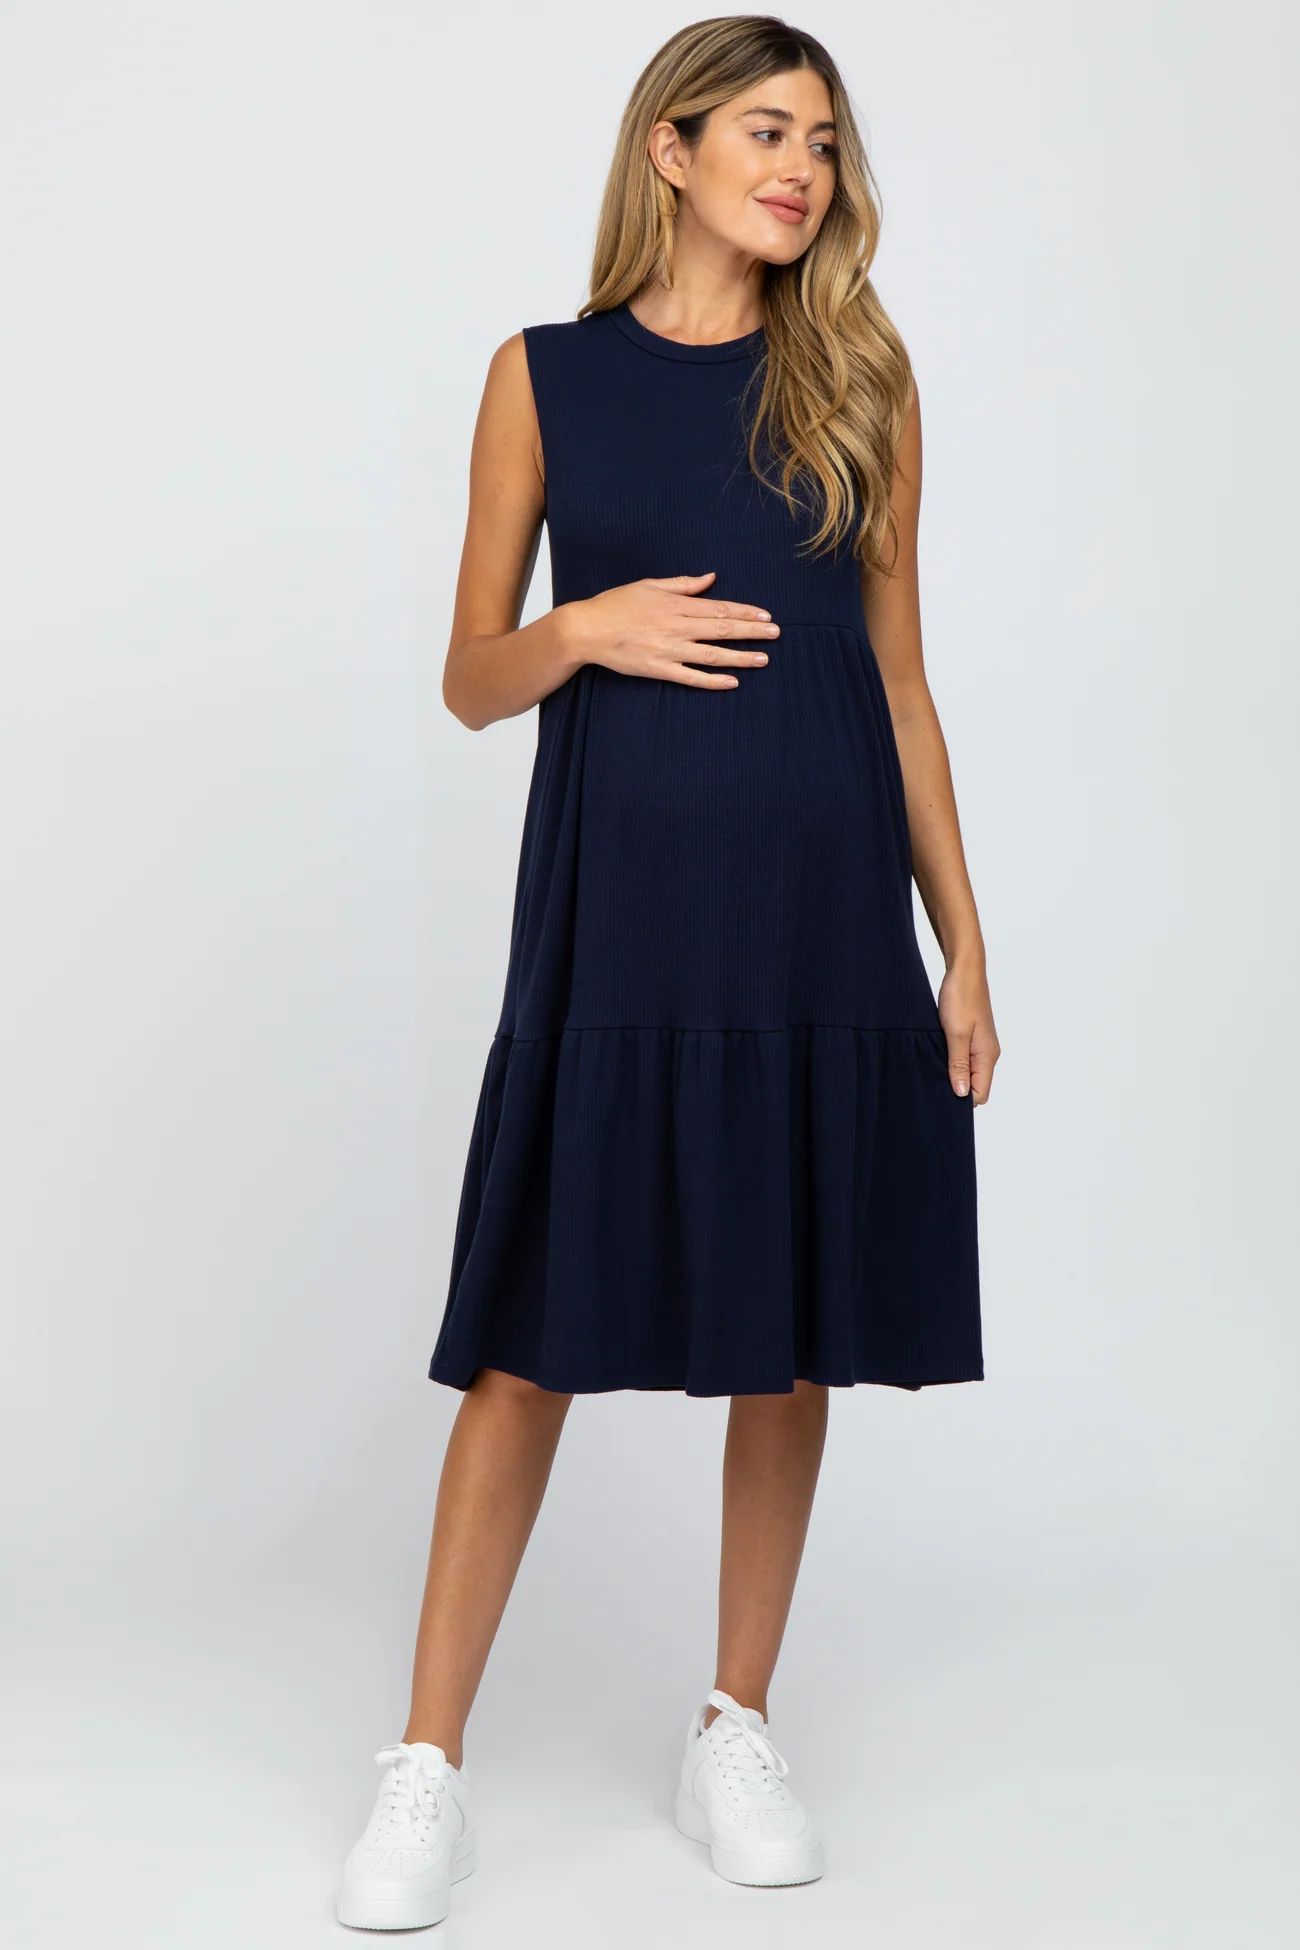 Navy Ribbed Sleeveless Maternity Midi Dress | PinkBlush Maternity